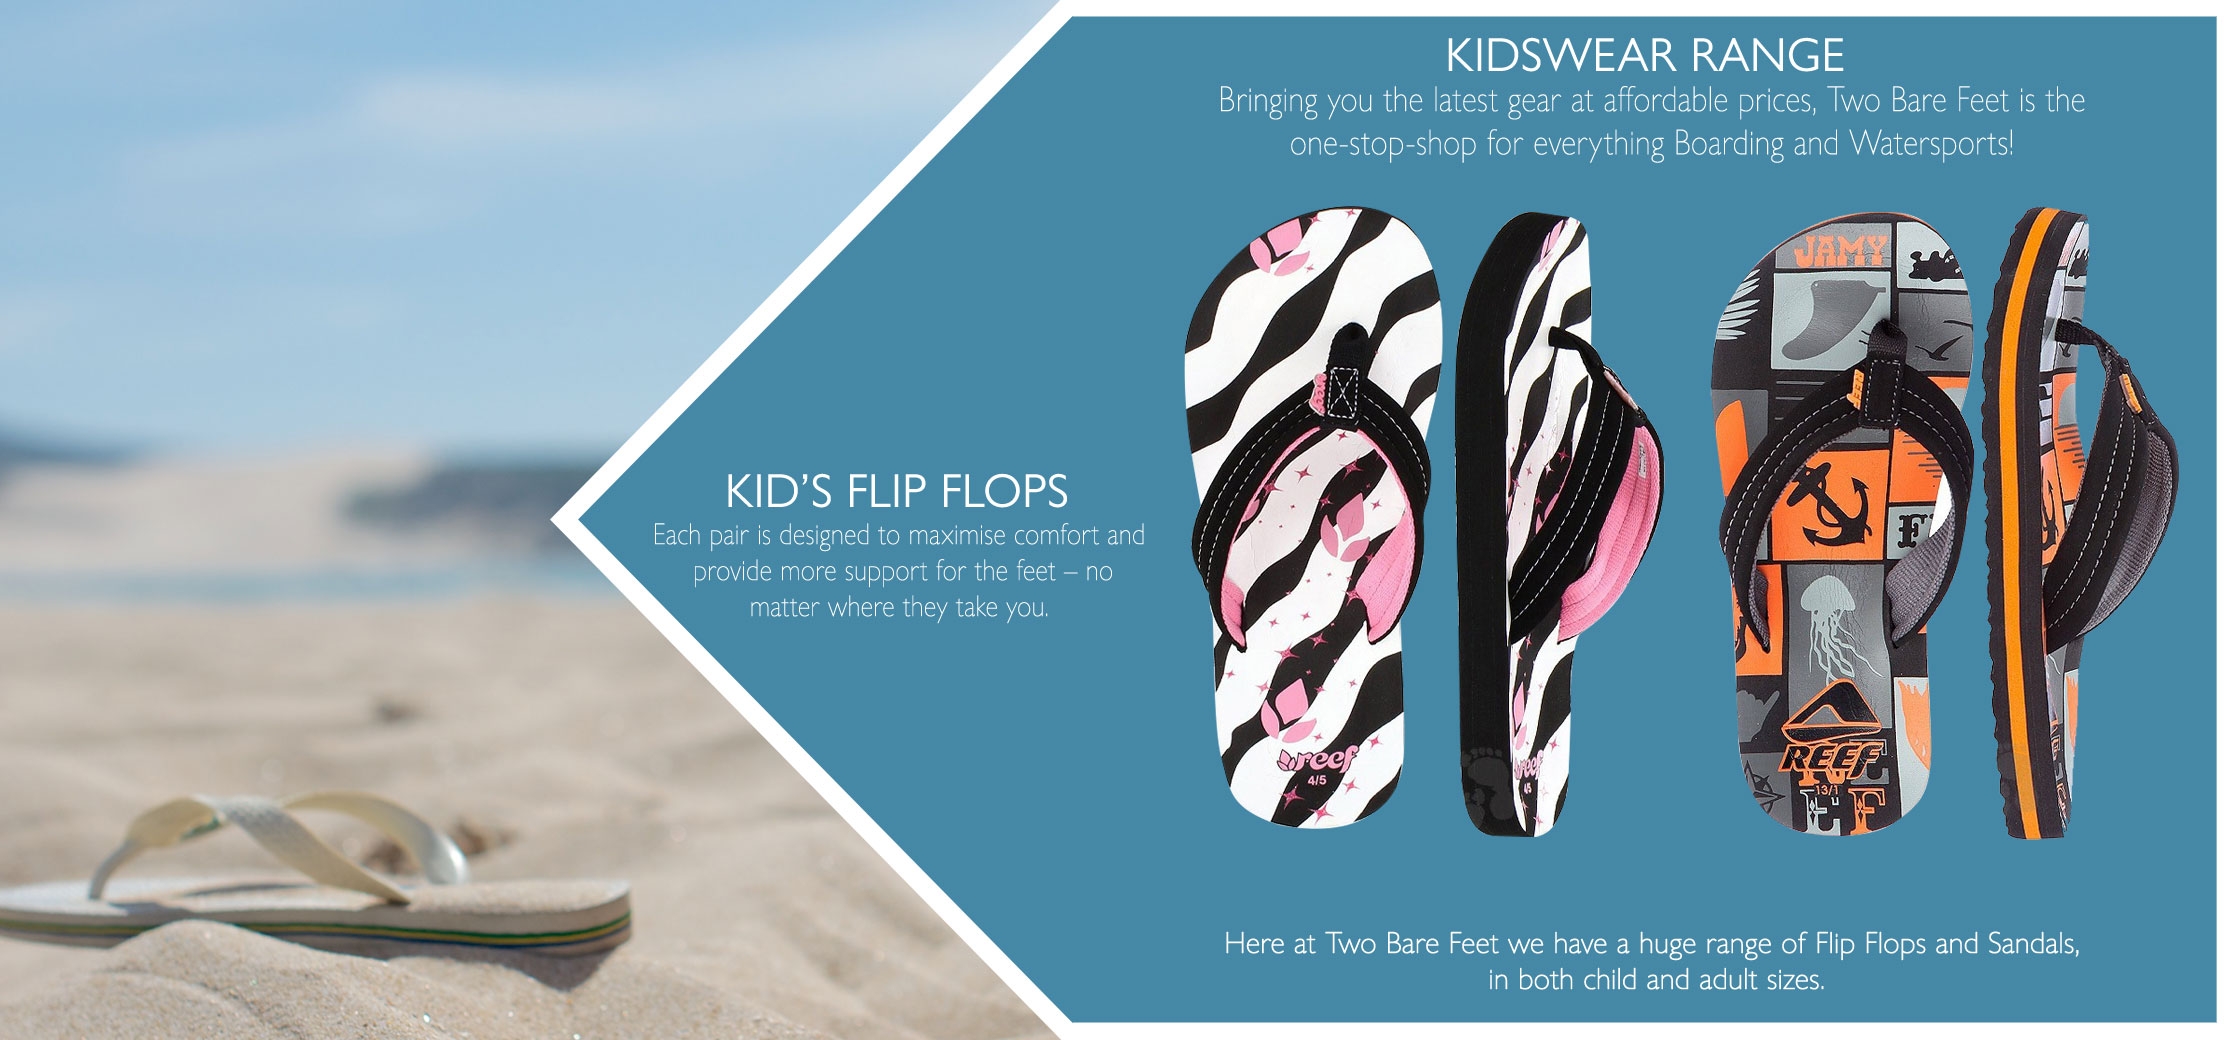 Types of kid's flip flops